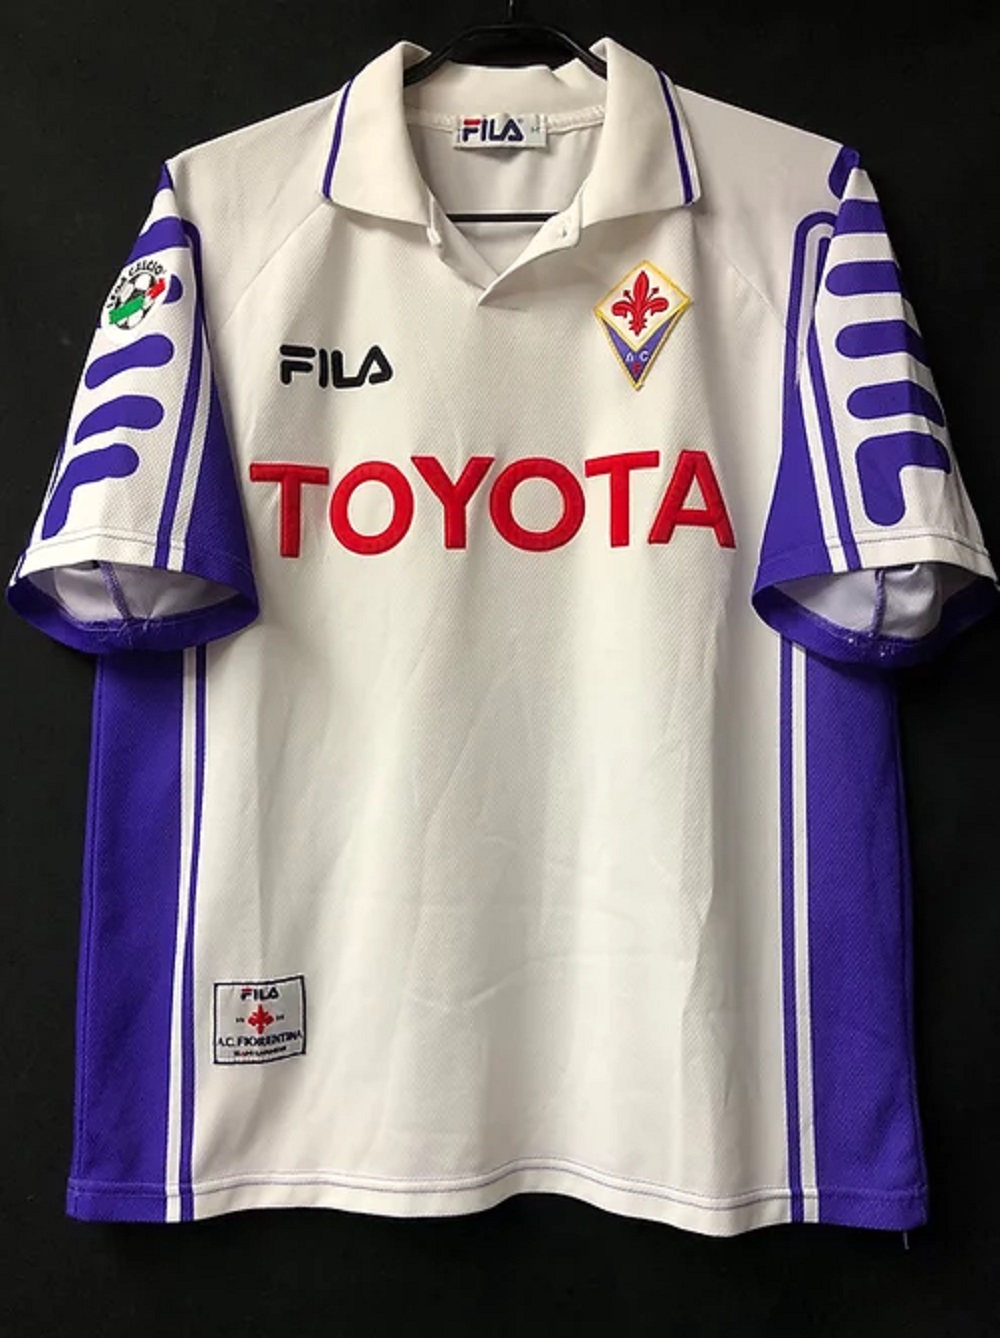 Ver: Fiorentina em Direto